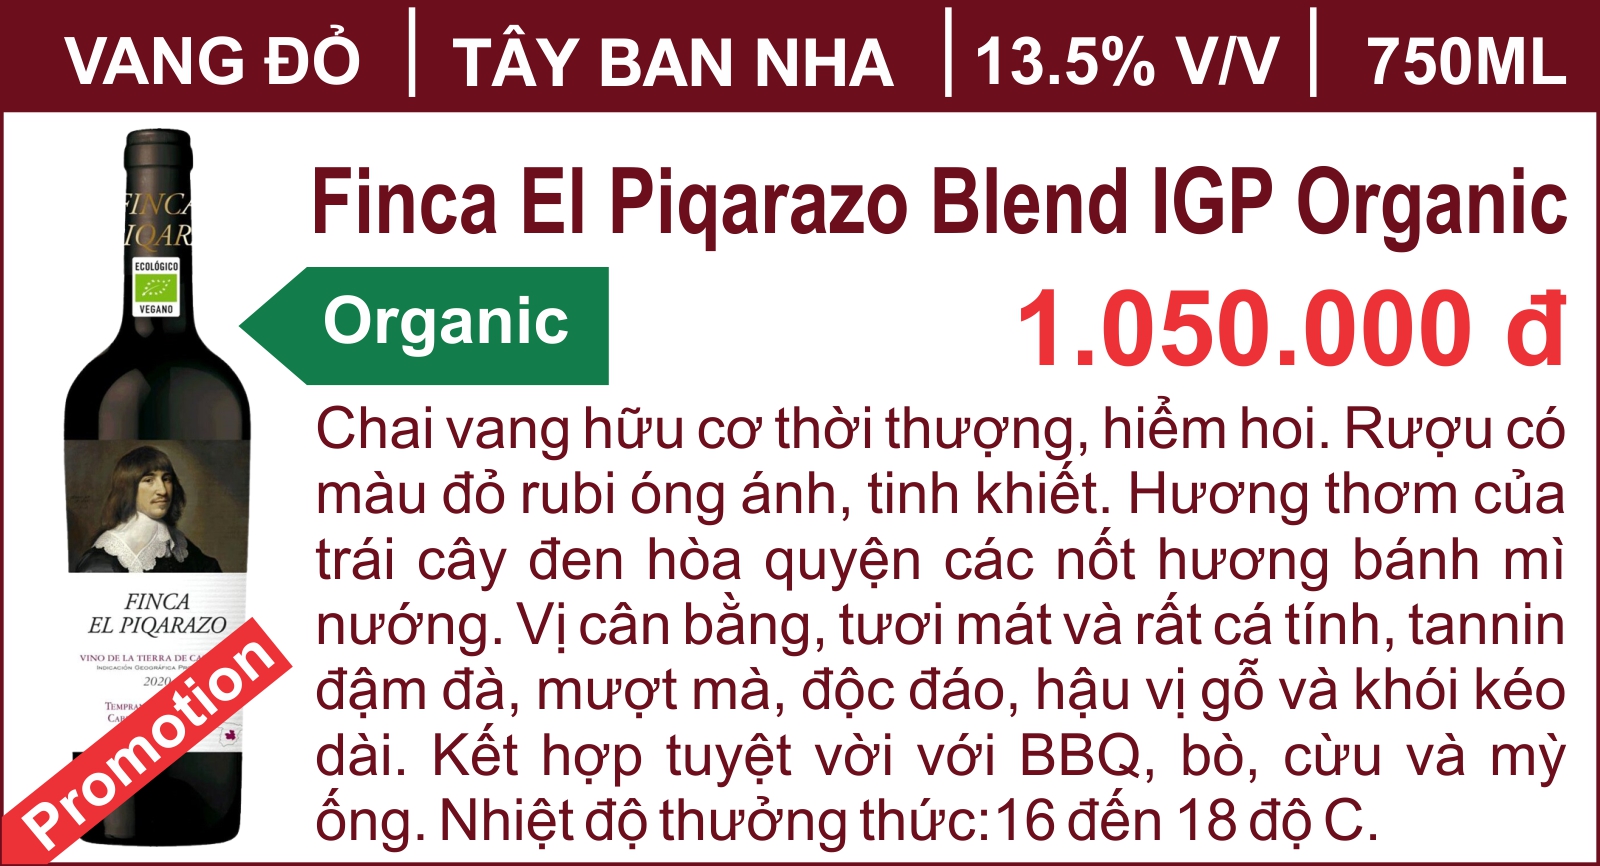 Finca El Piqarazo Blend IGP Organic